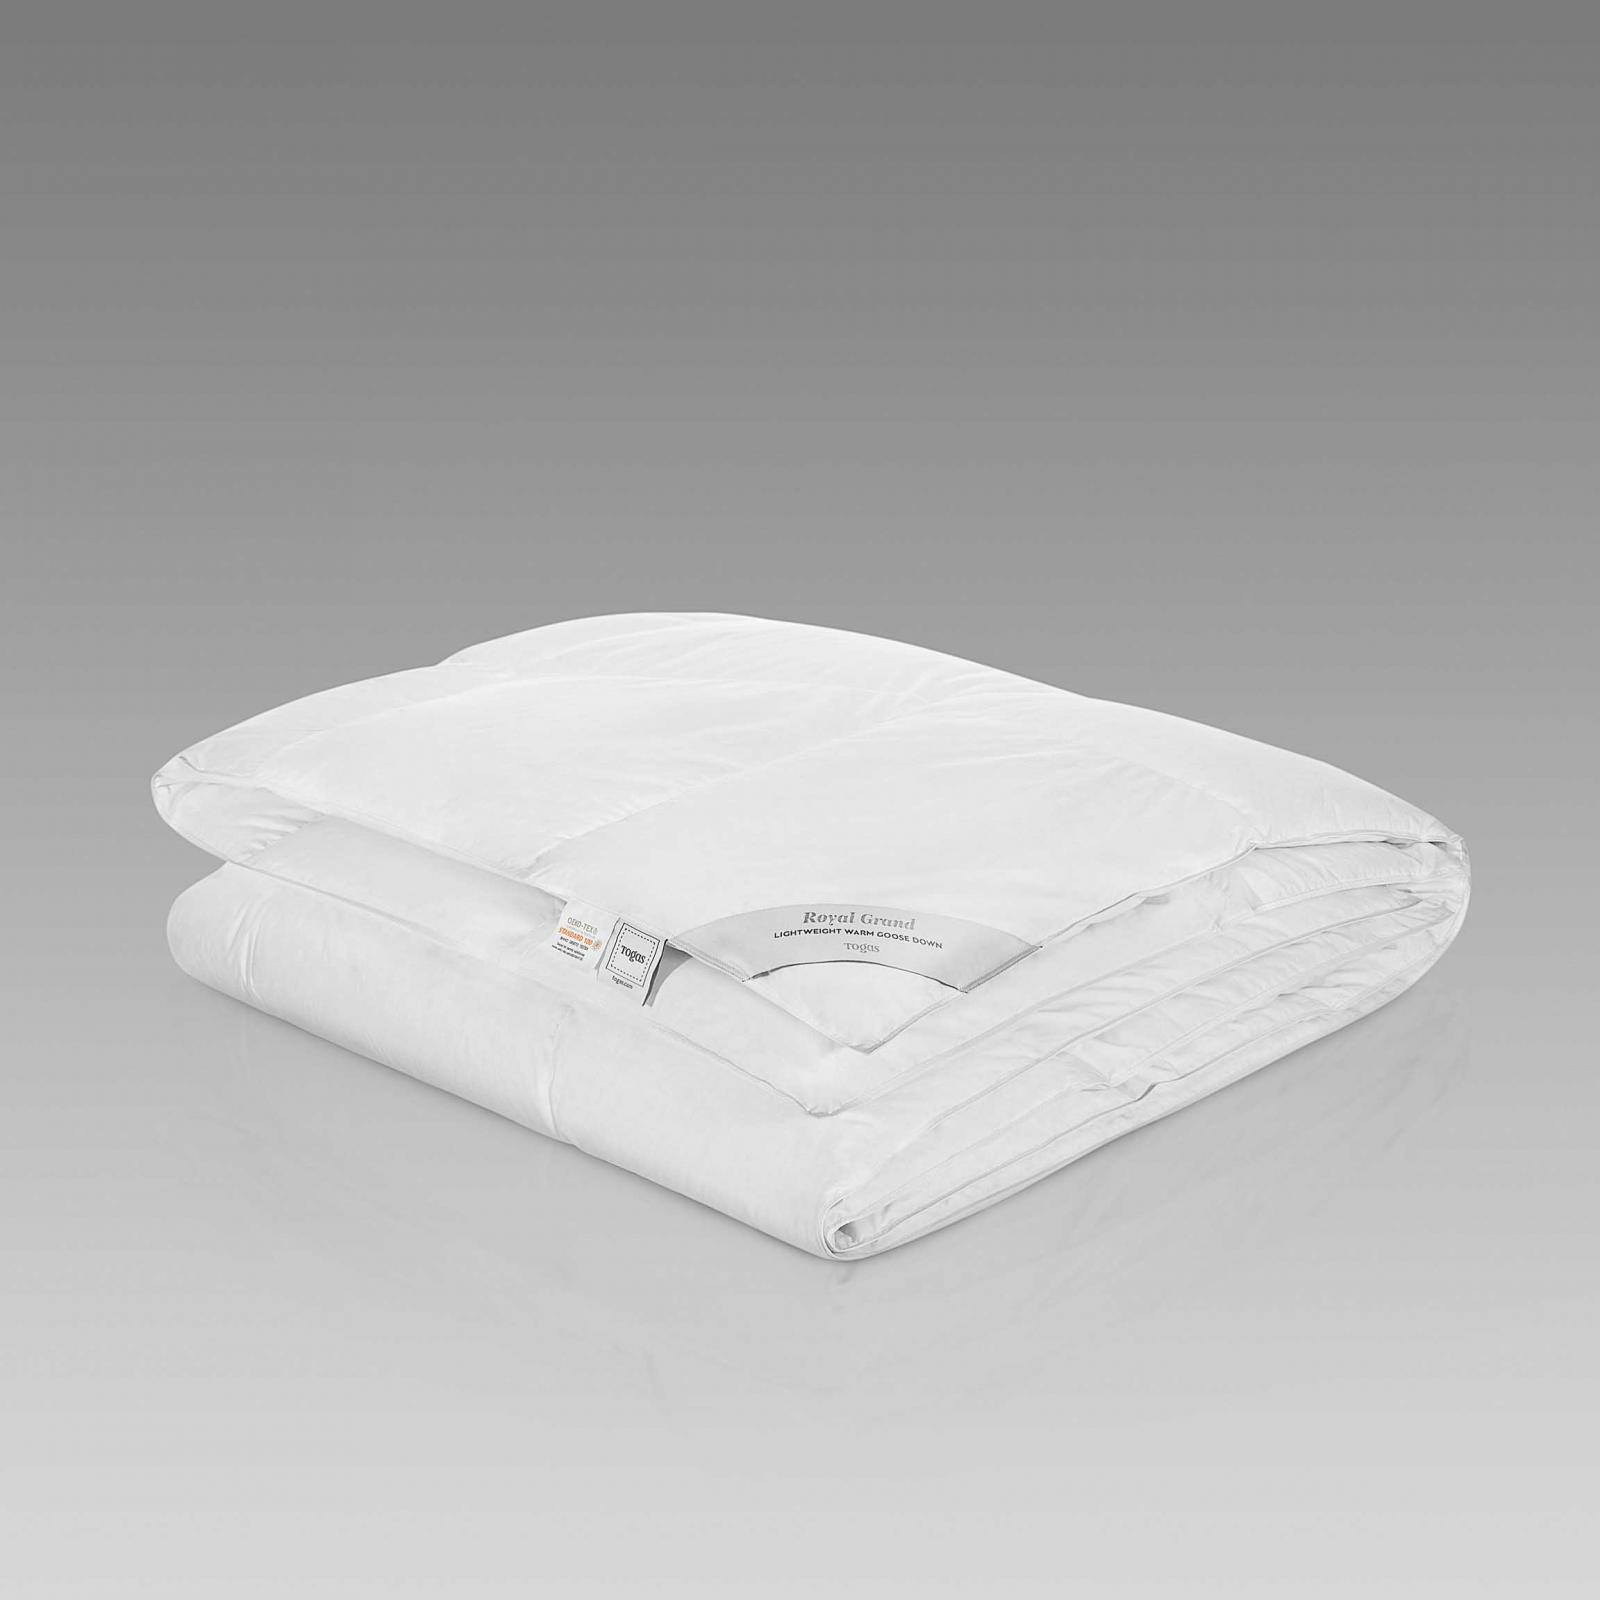 Одеяло Togas Роял Гранд белое 220х240 см одеяло daunex badia warm 220x240